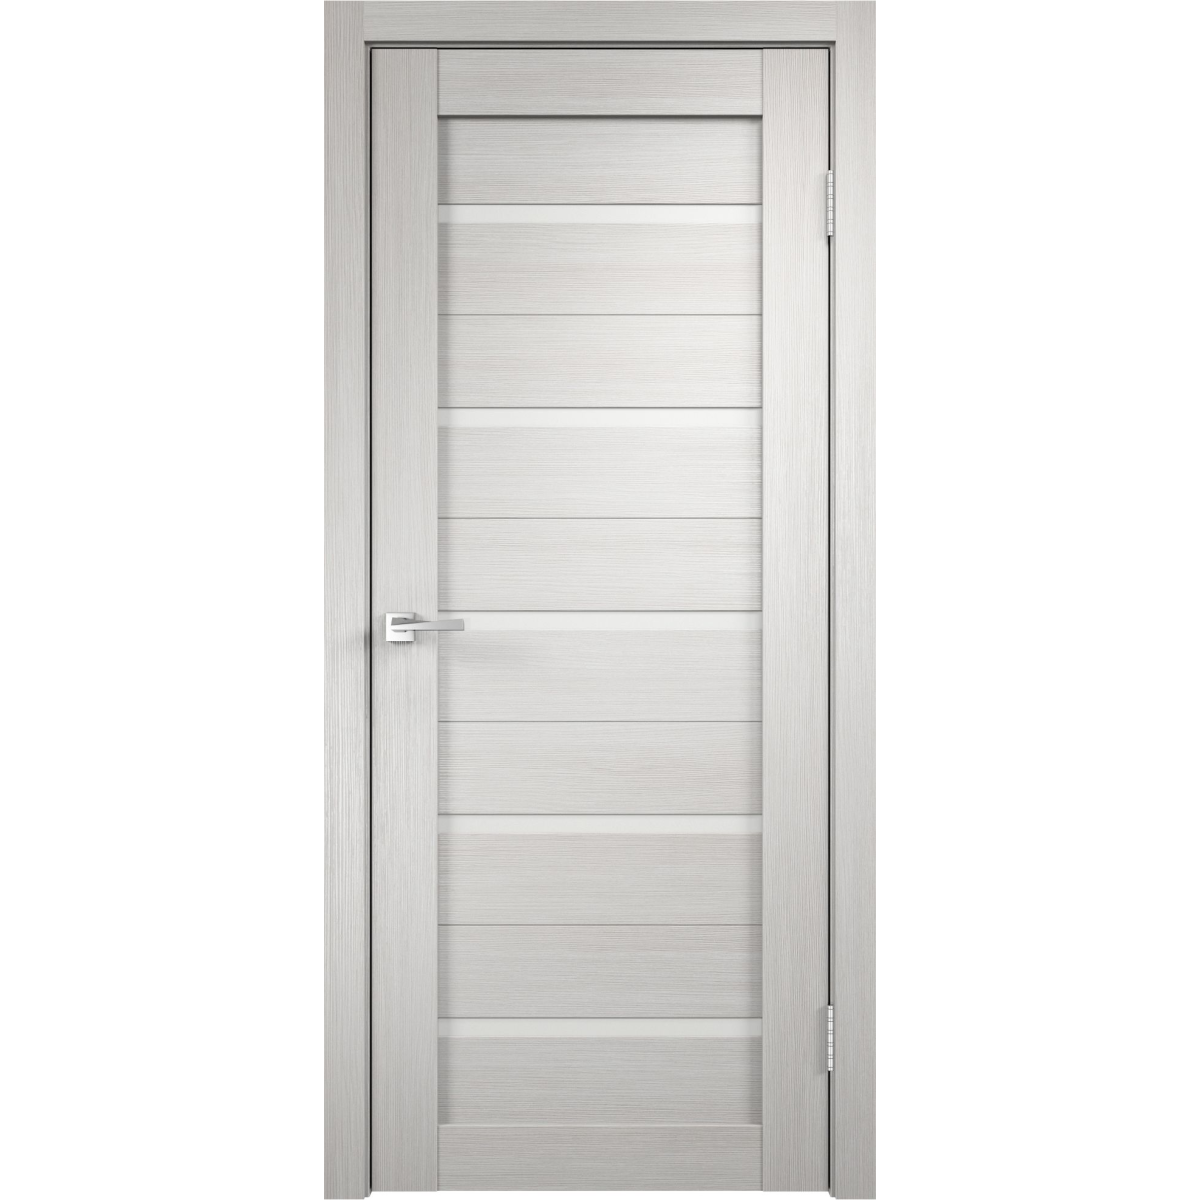 Дверь межкомнатная Дюплекс 60x200 см, ПВХ, цвет белёный дуб